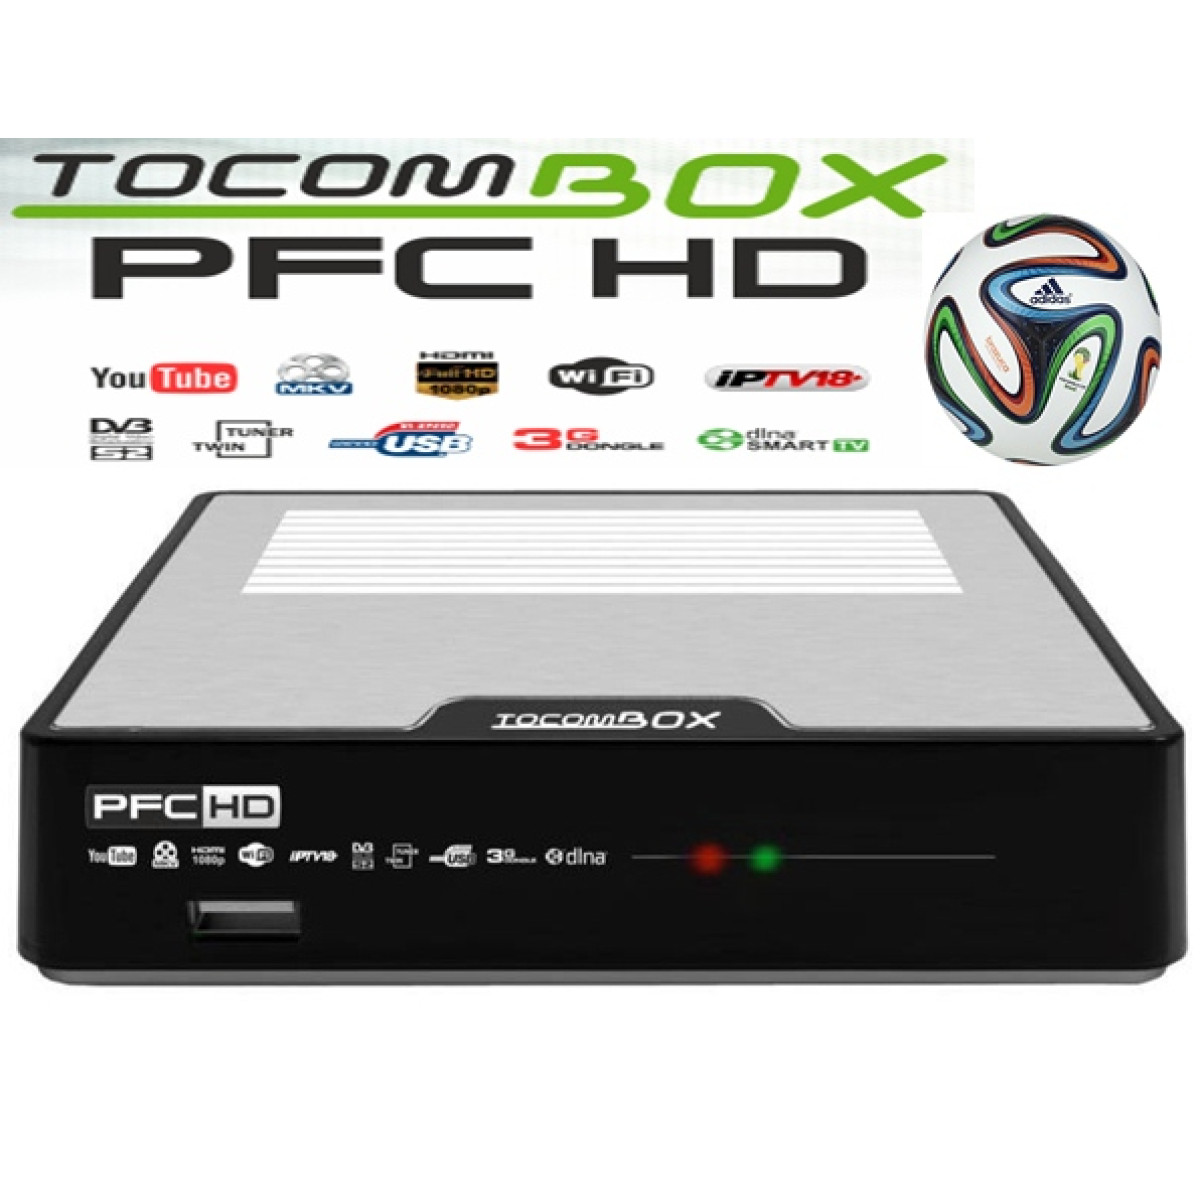 atualizacao - Tocombox PFC HD Atualização V4.0.1  Tocombox_pfc_6